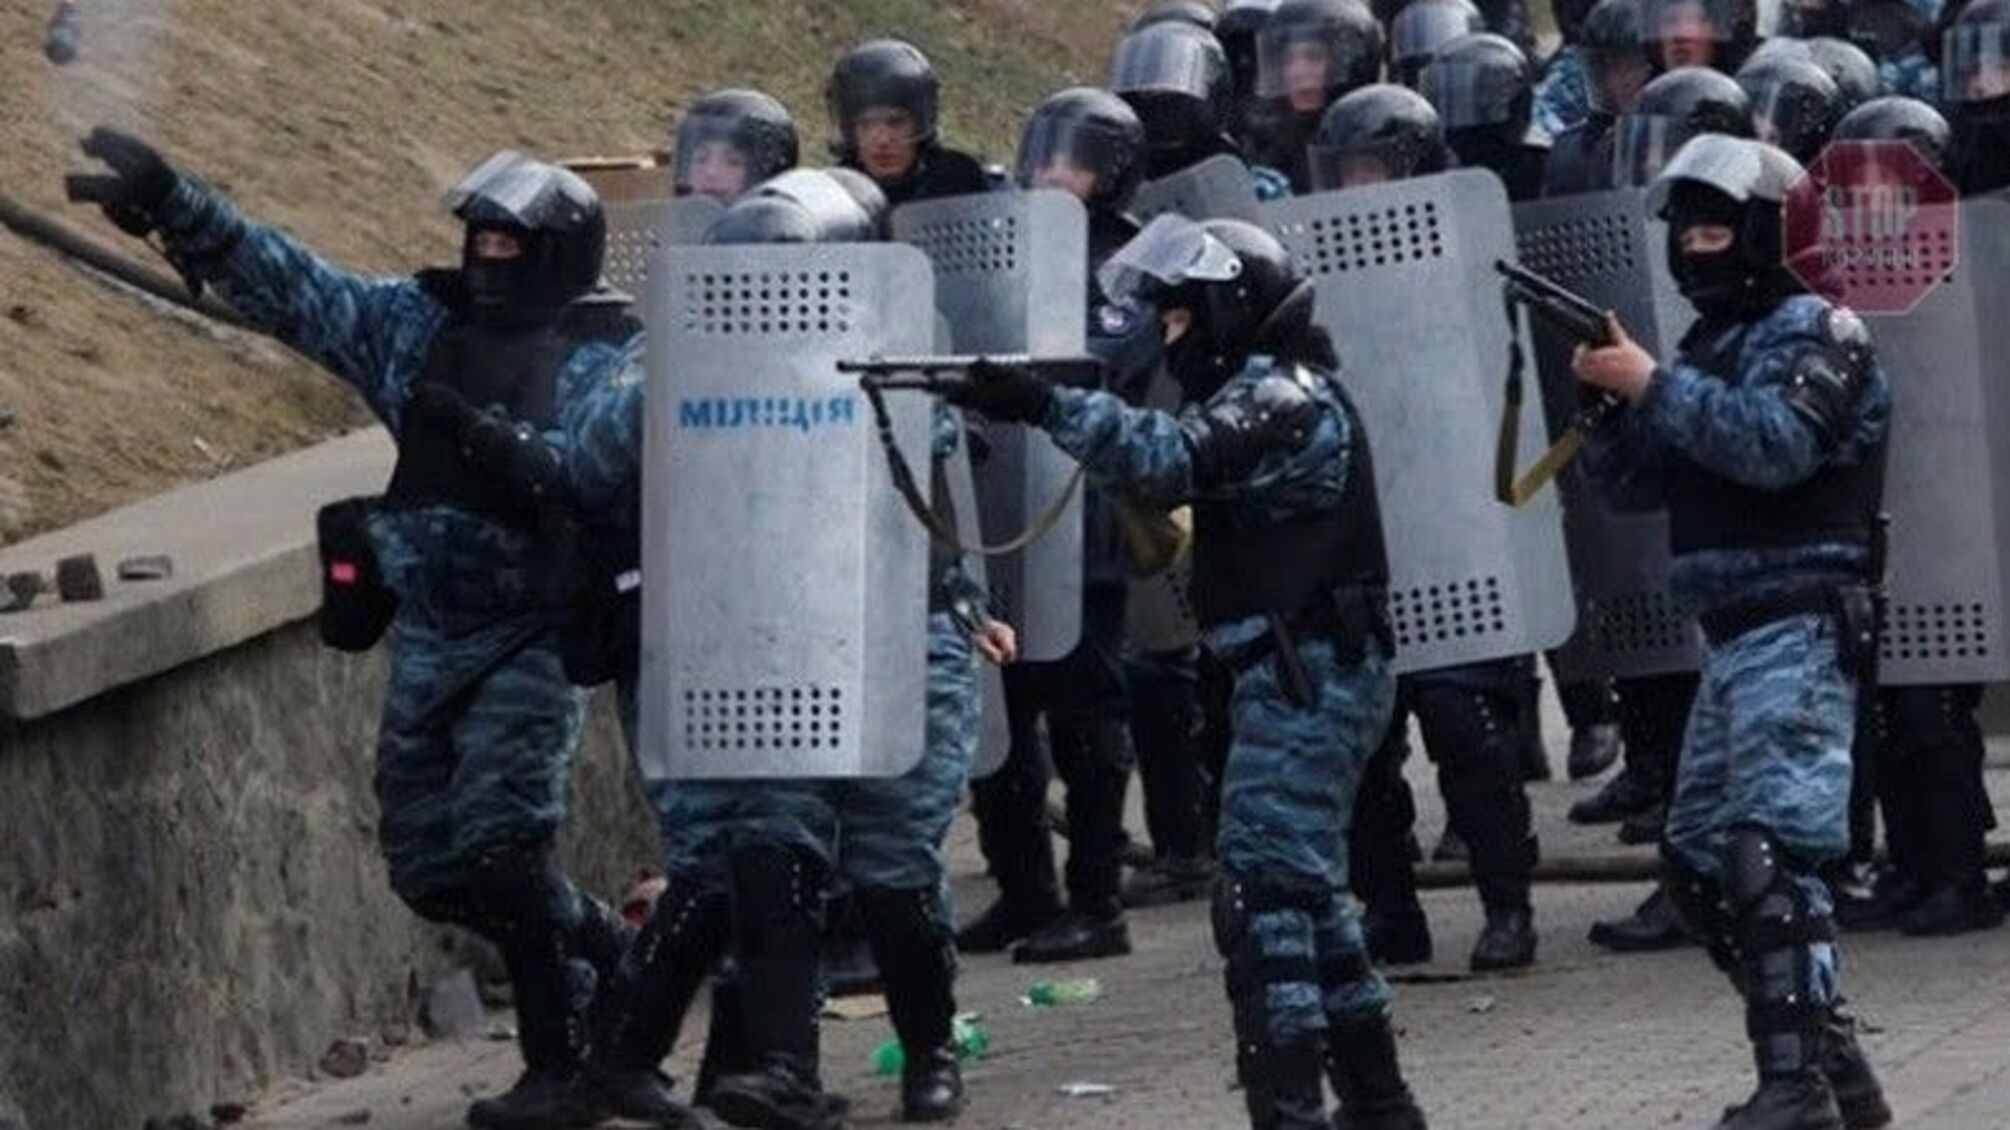 Міліціонери, які забезпечили ввезення спецзасобів з Росії для розгону Євромайдану, досі працюють в МВС